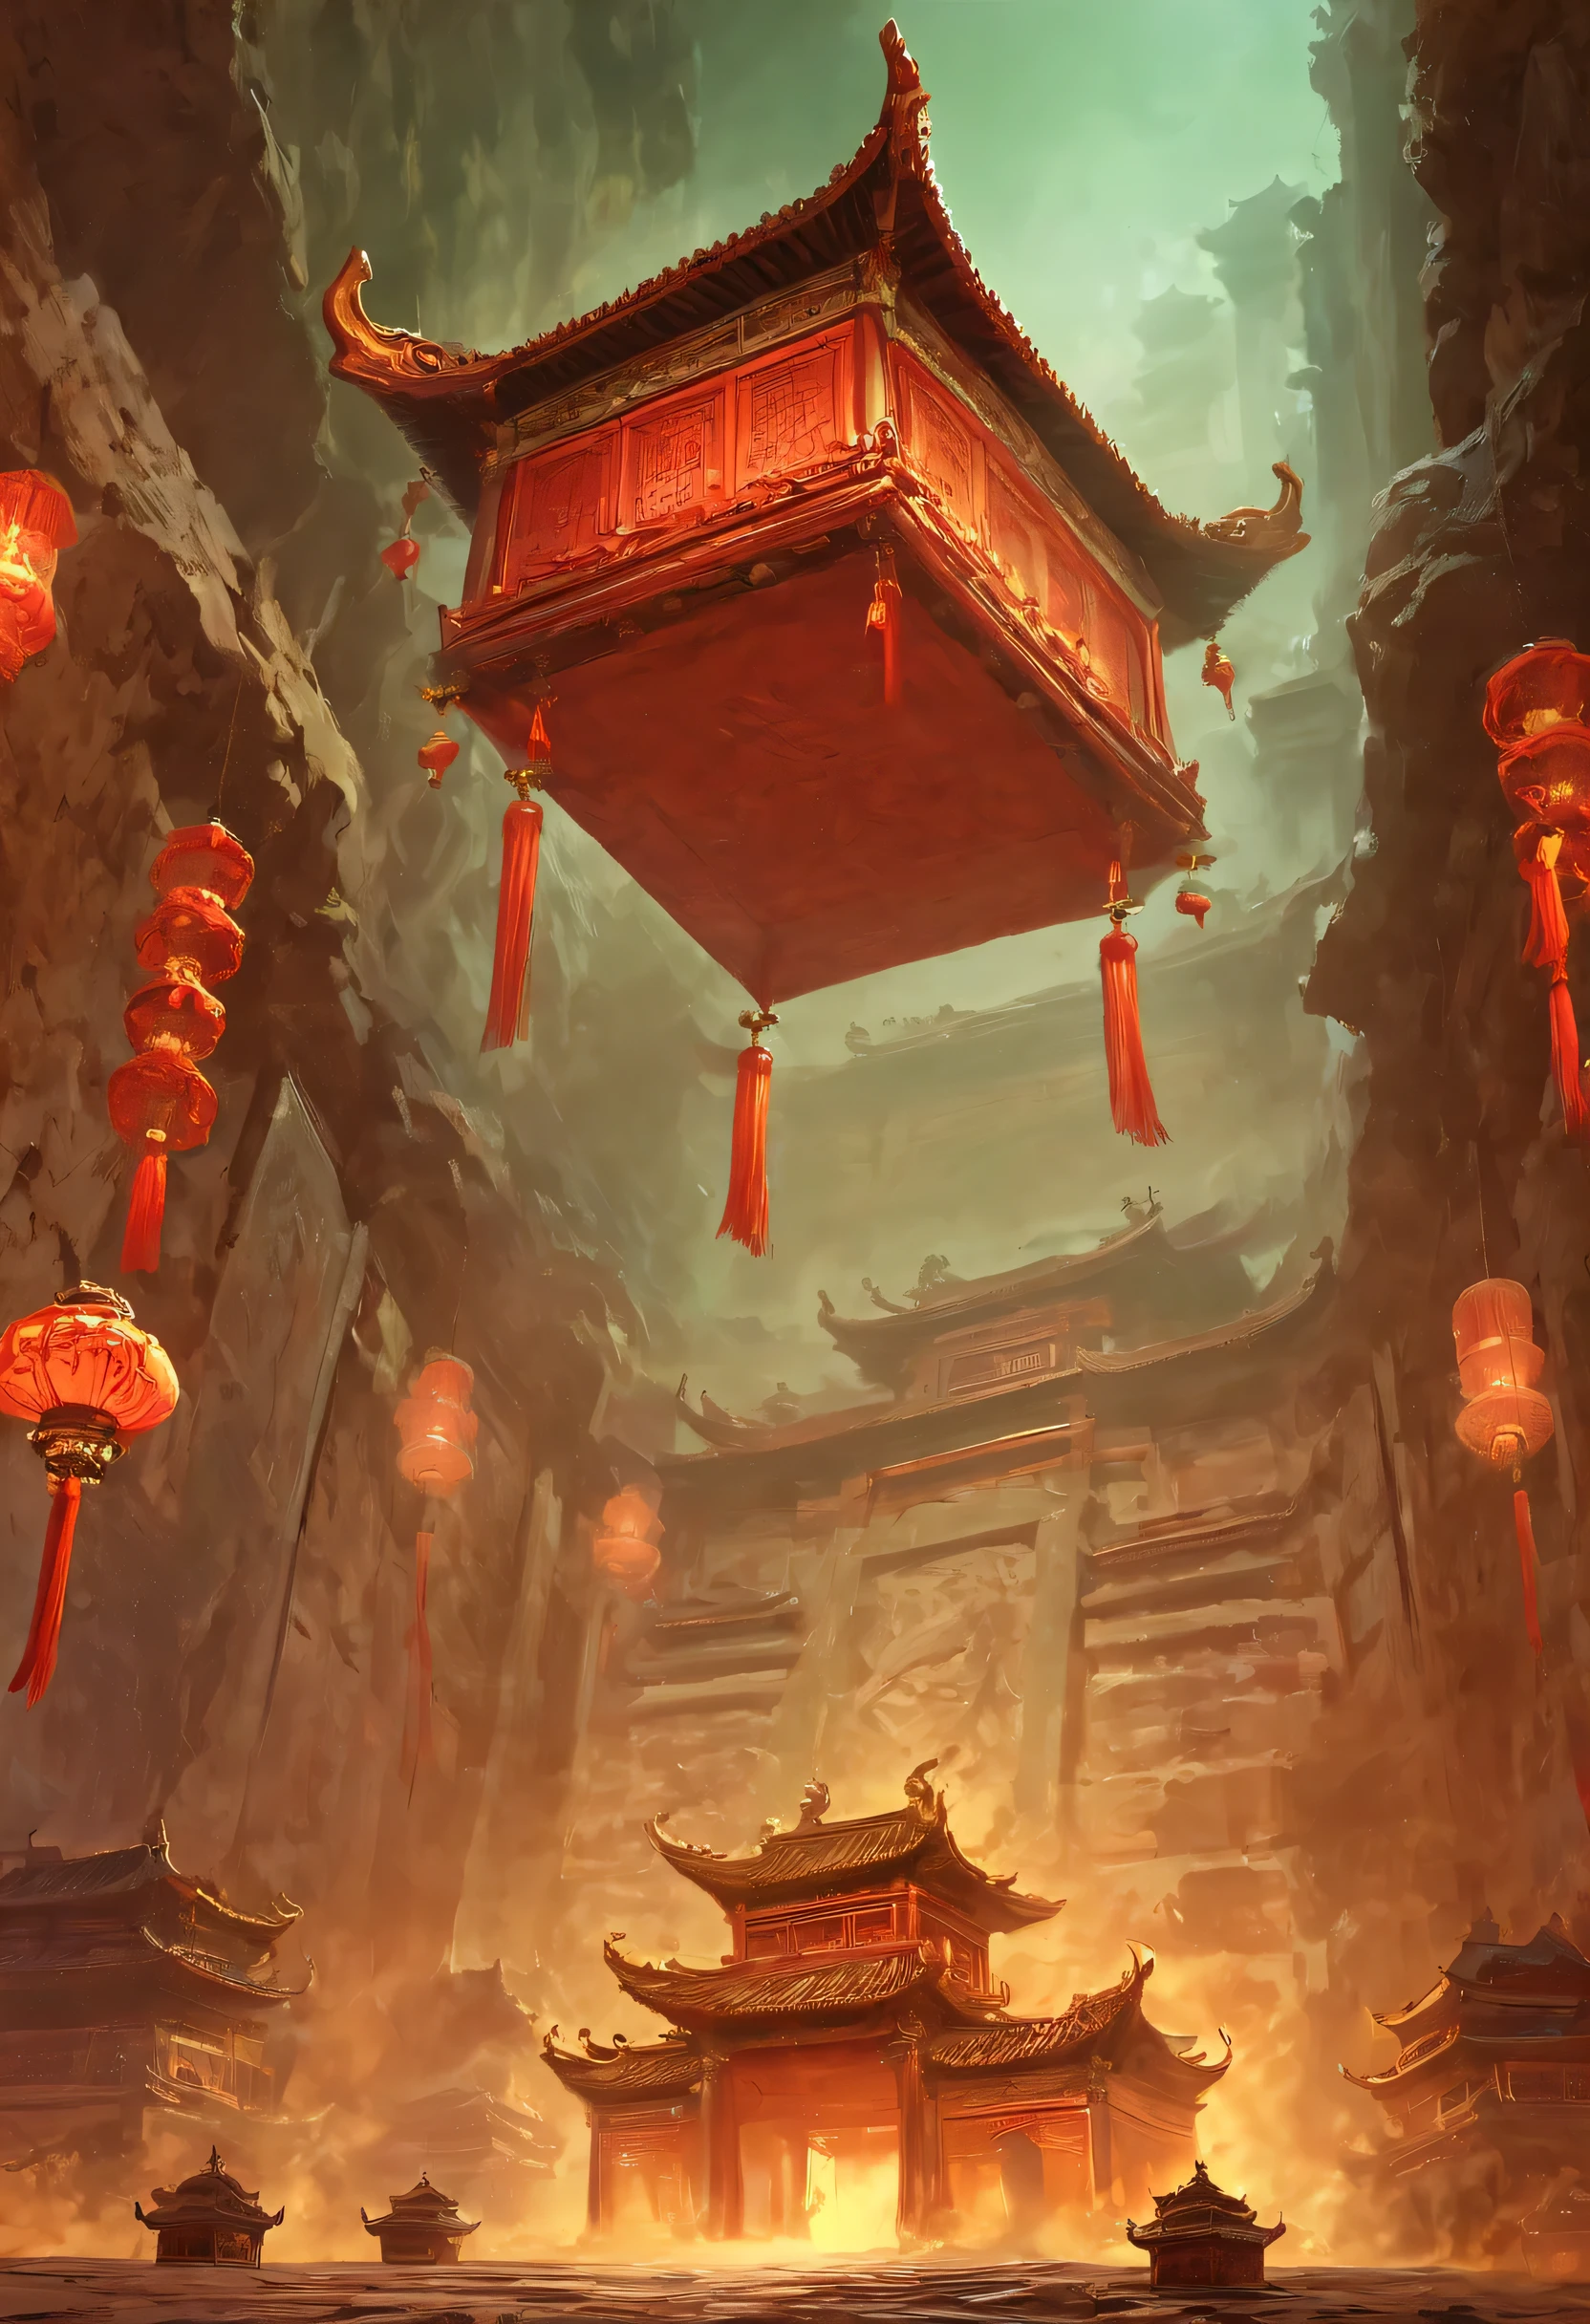 подземная гробница：1.37.（（（神秘的东方подземная гробница，подземная гробница，Великолепный и просторный величественный пейзаж））），Красный седан завис в воздухе，Китайский седан，Тусклый свет，каменные стены с замысловатой резьбой，Таинственная атмосфера пугает，сверхъестественные силы。
